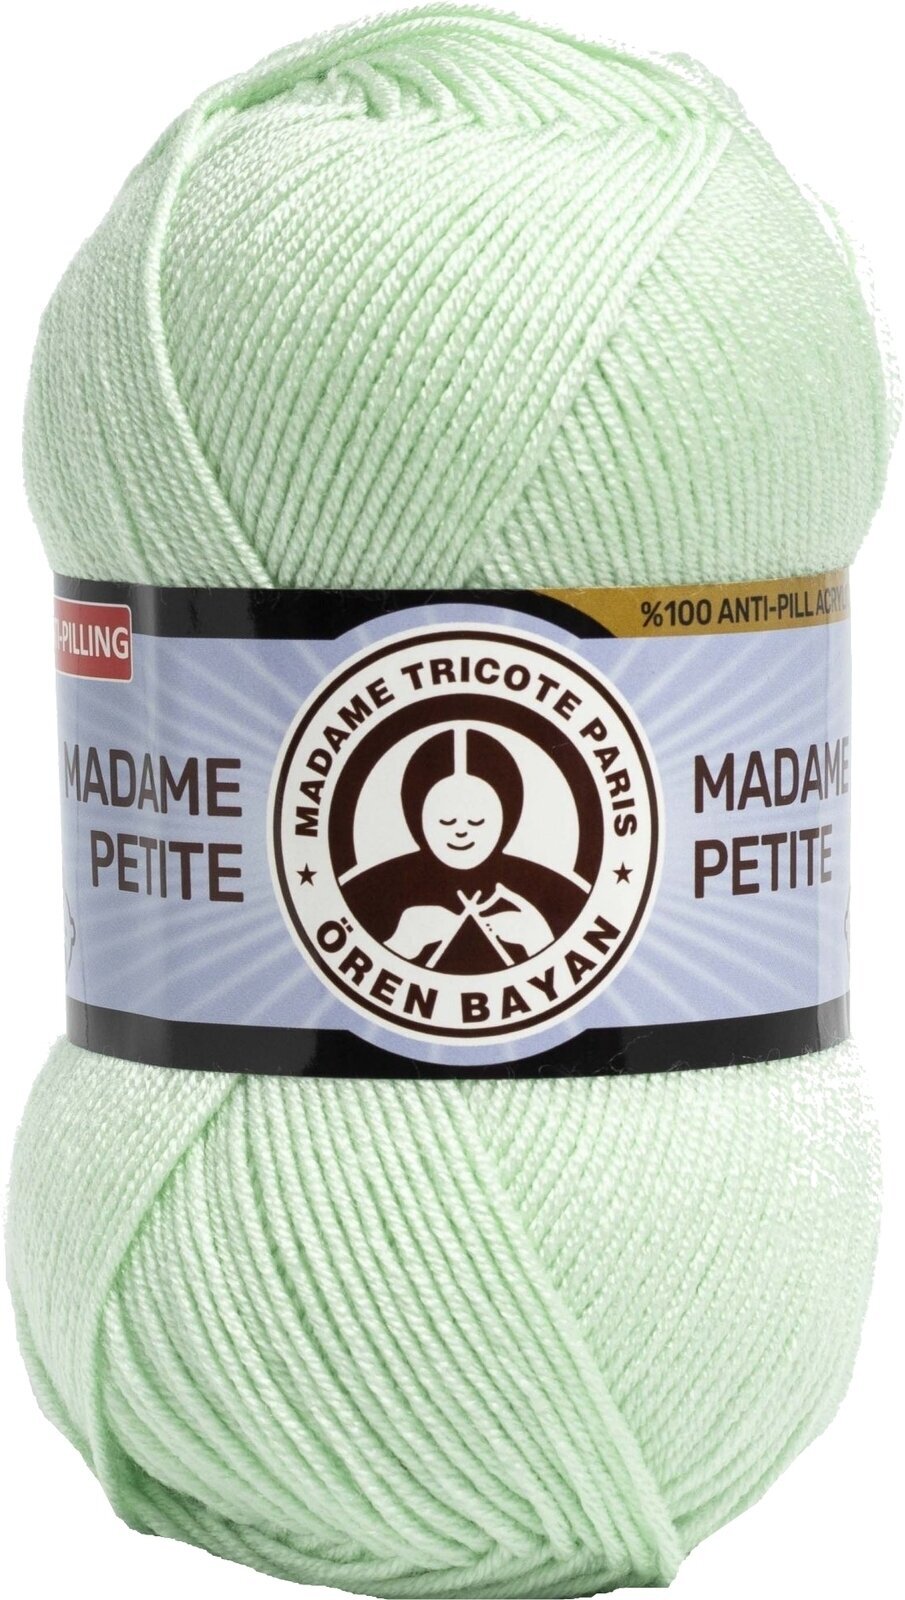 Pletací příze Madame Tricote Paris Madame Petite 3848 90 Pletací příze